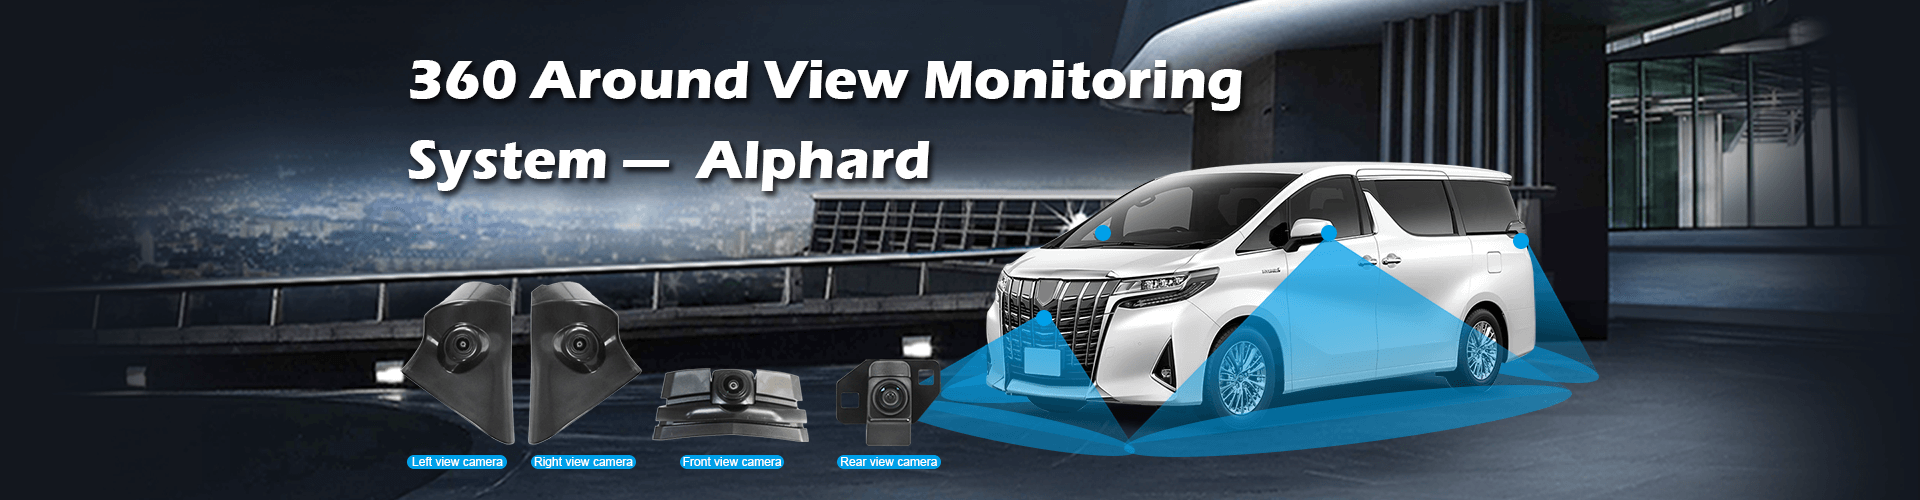 360 حول نظام رصد الرؤية لمركبة محددة Alphard